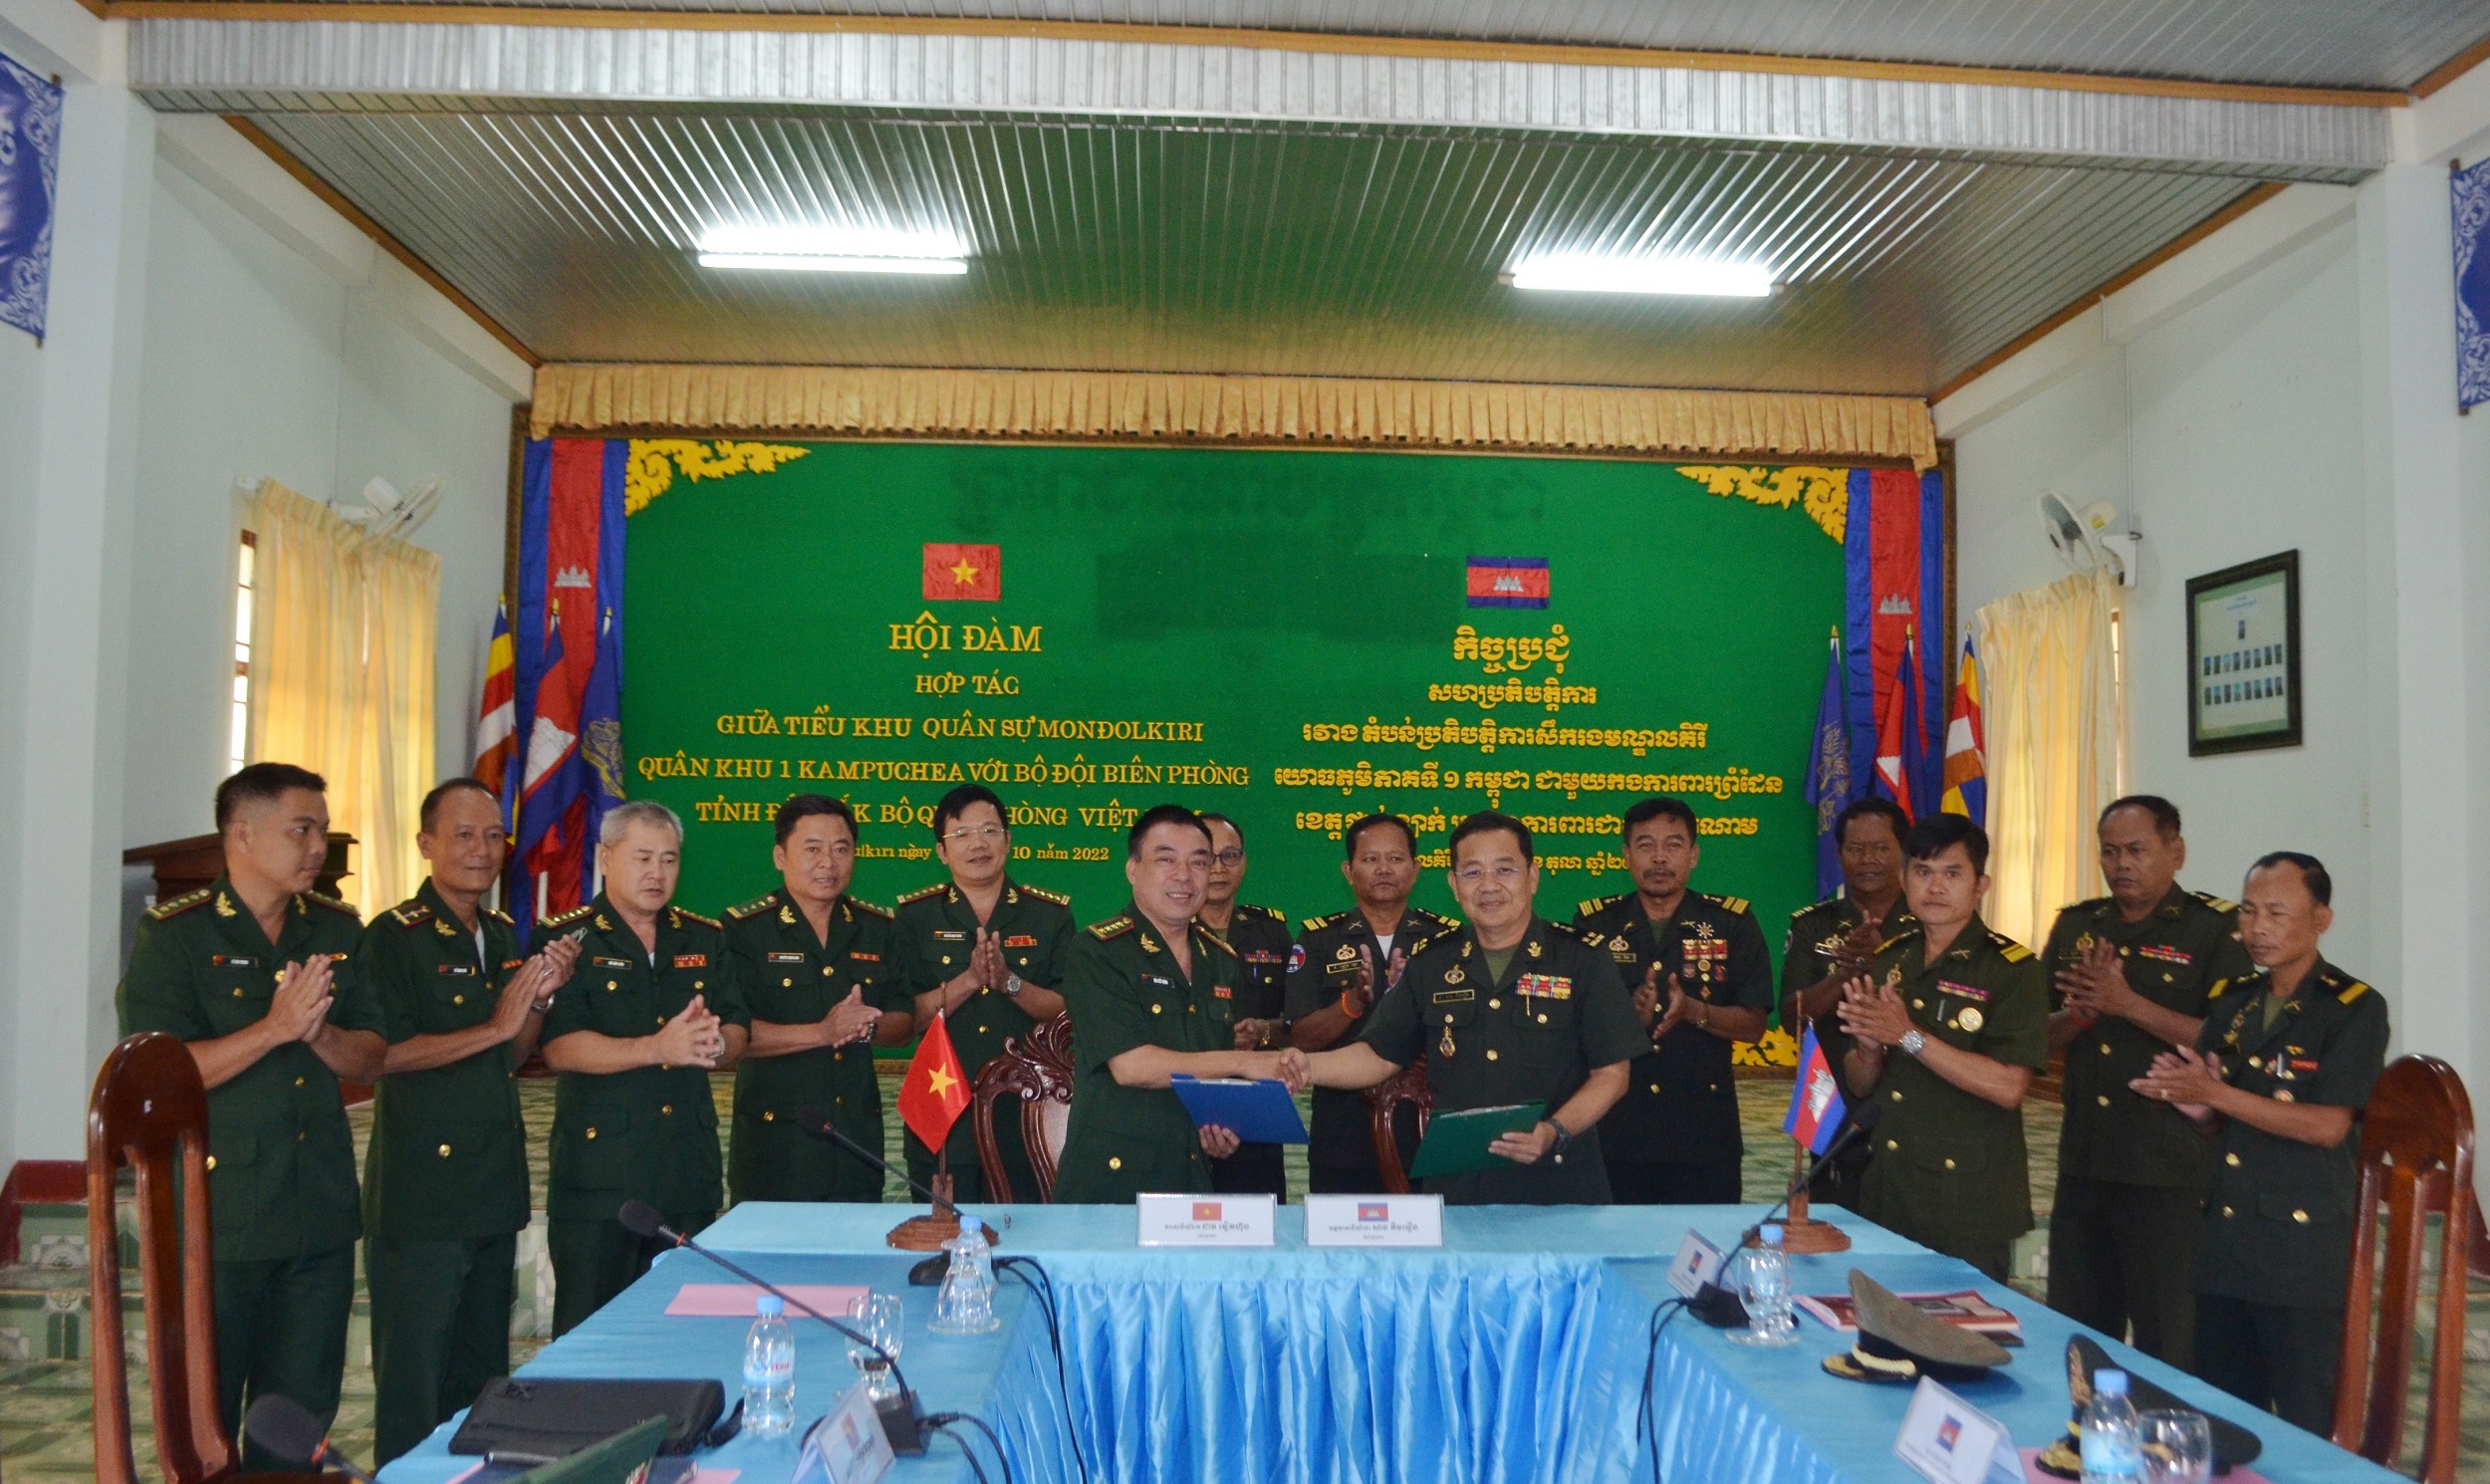 Bộ đội Biên phòng Đắk Lắk và Tiểu khu Quân sự Mondulkiri tổ chức hội đàm hợp tác lần thứ XIII